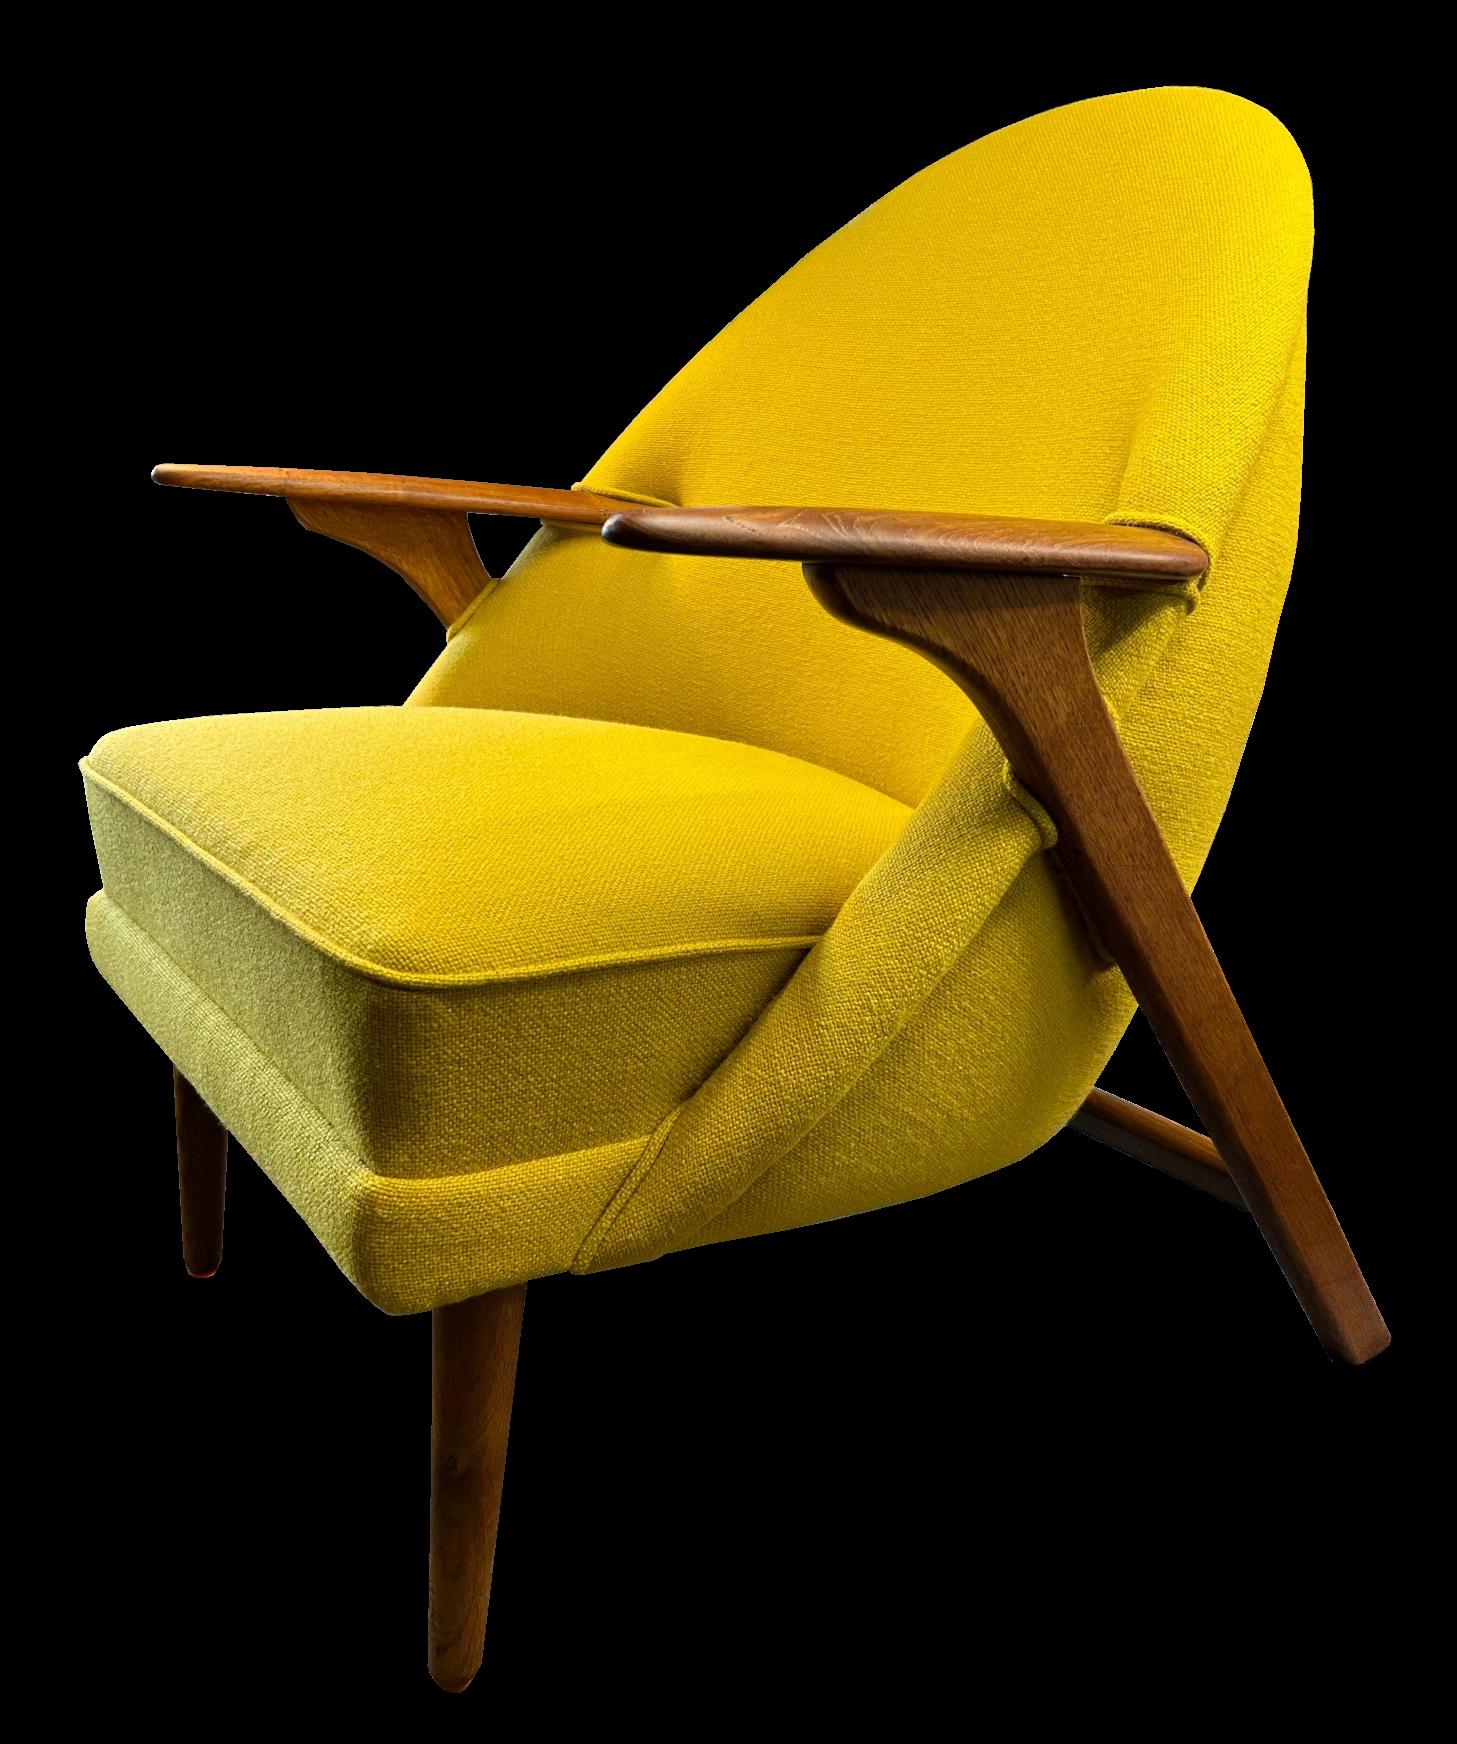 Il s'agit d'un fauteuil 'wingman' original très rare d'Arne Hovmand Olsen.
Le cadre est en  très bon état et la sellerie vient d'être refaite au Danemark dans les règles de l'art. 